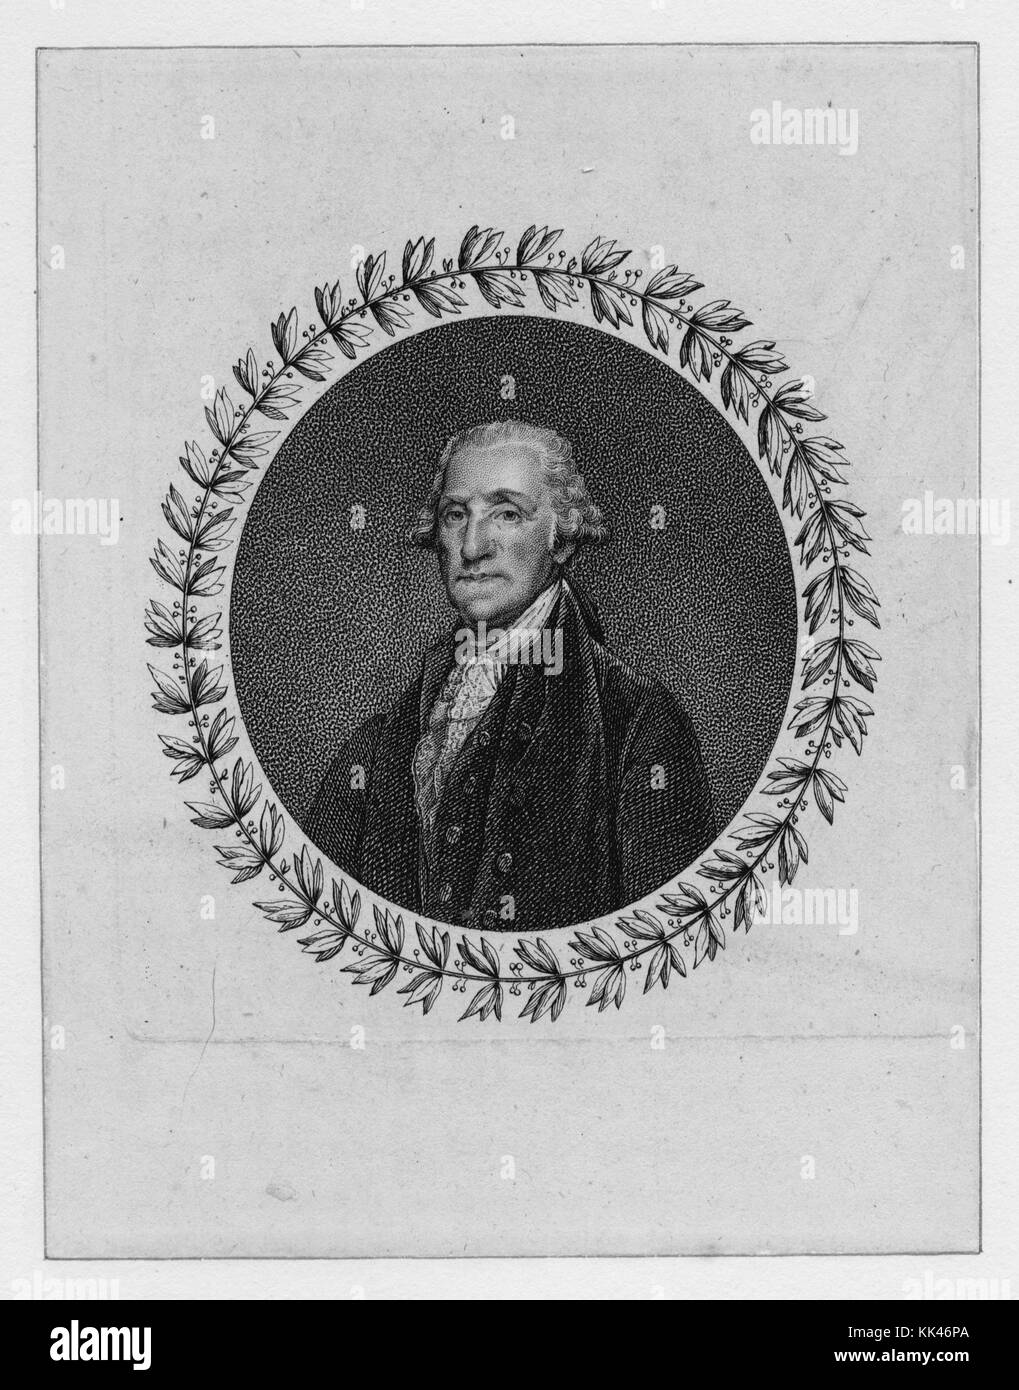 De forme ovale gravé, portrait de George Washington, avec une couronne autour de la frontière, 3388. À partir de la Bibliothèque publique de New York. Banque D'Images